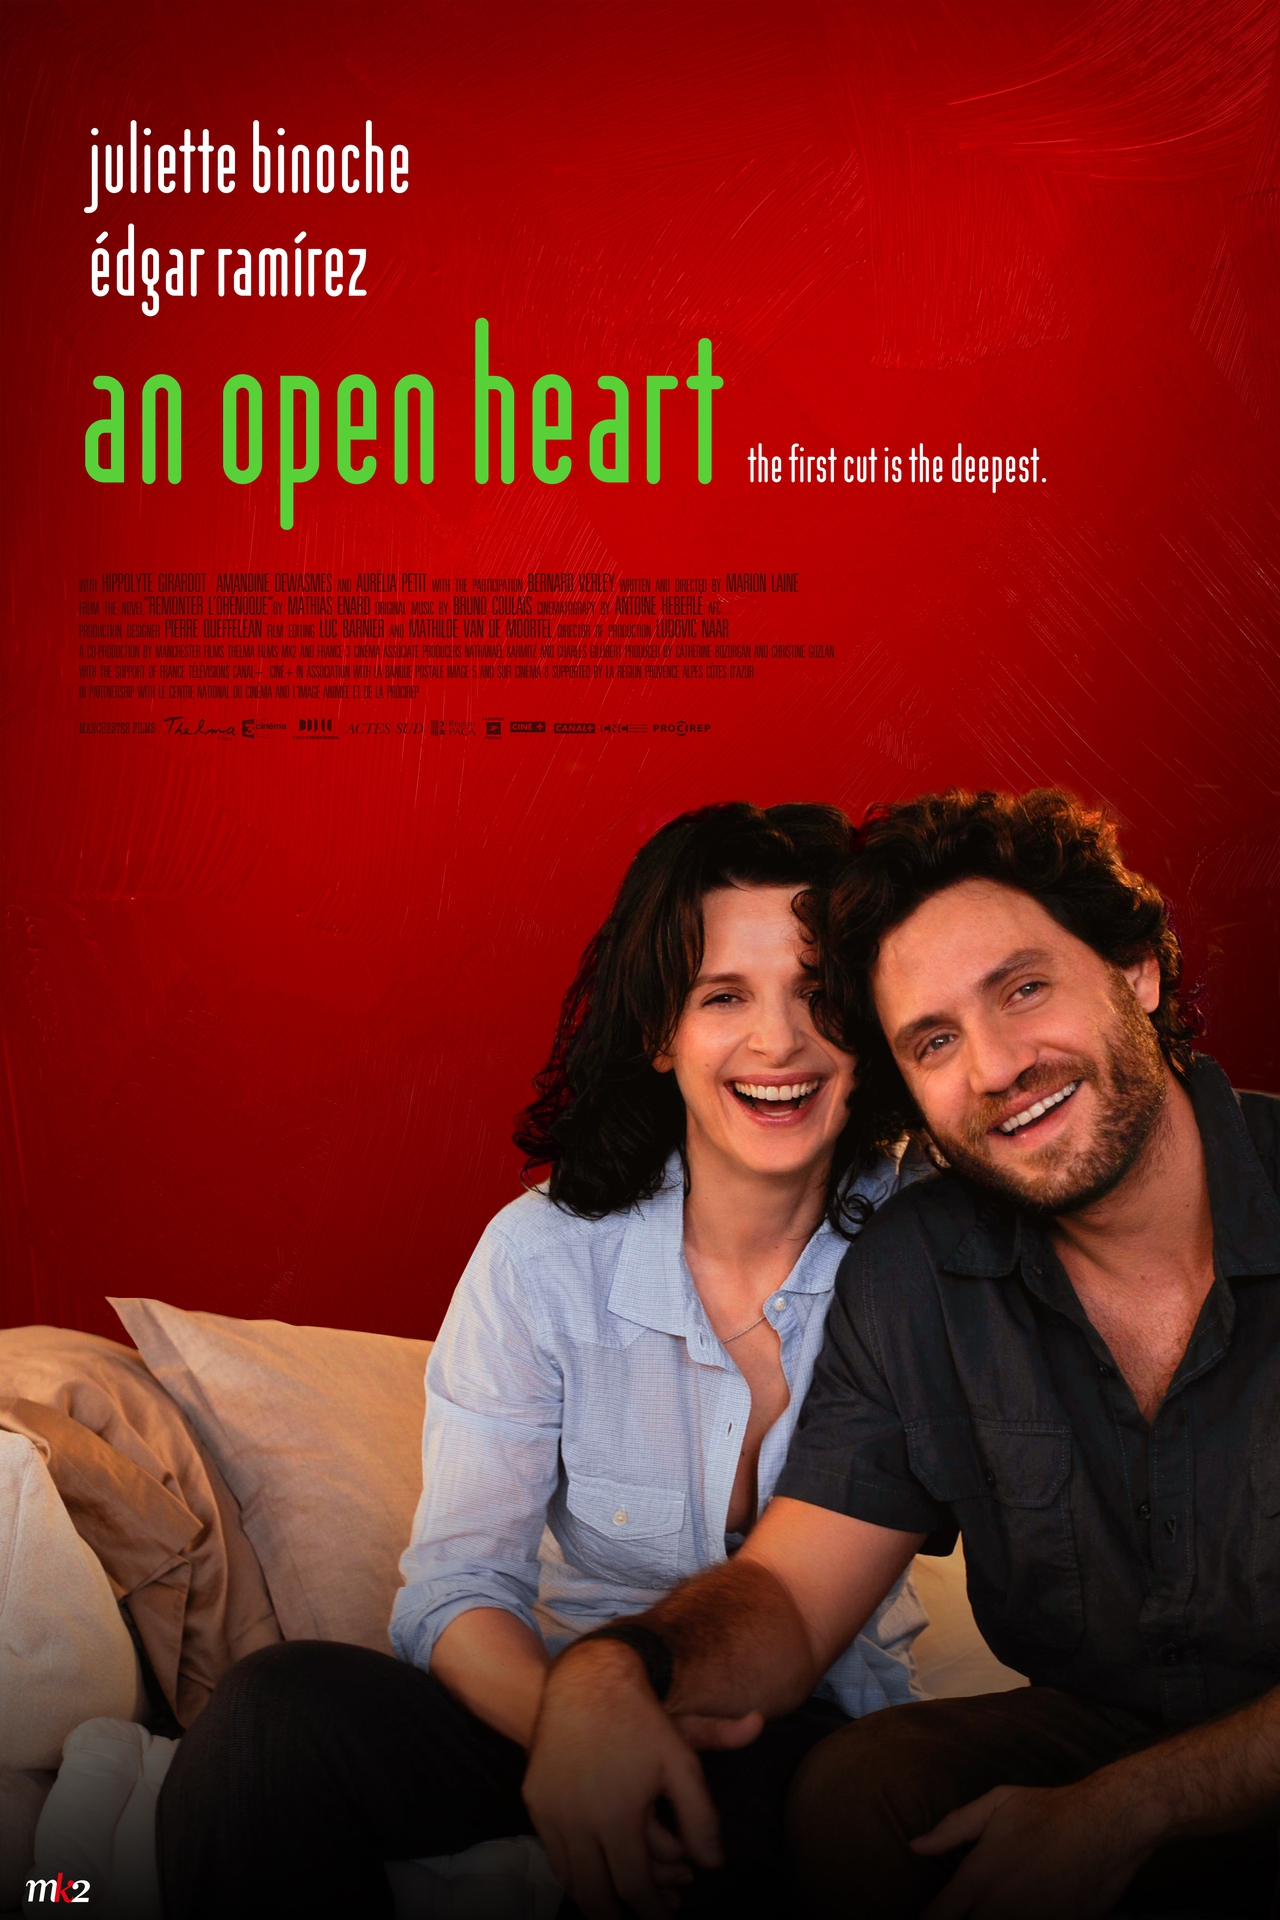  فیلم سینمایی An Open Heart با حضور ژولیت بینوش و ادگار رامیرز